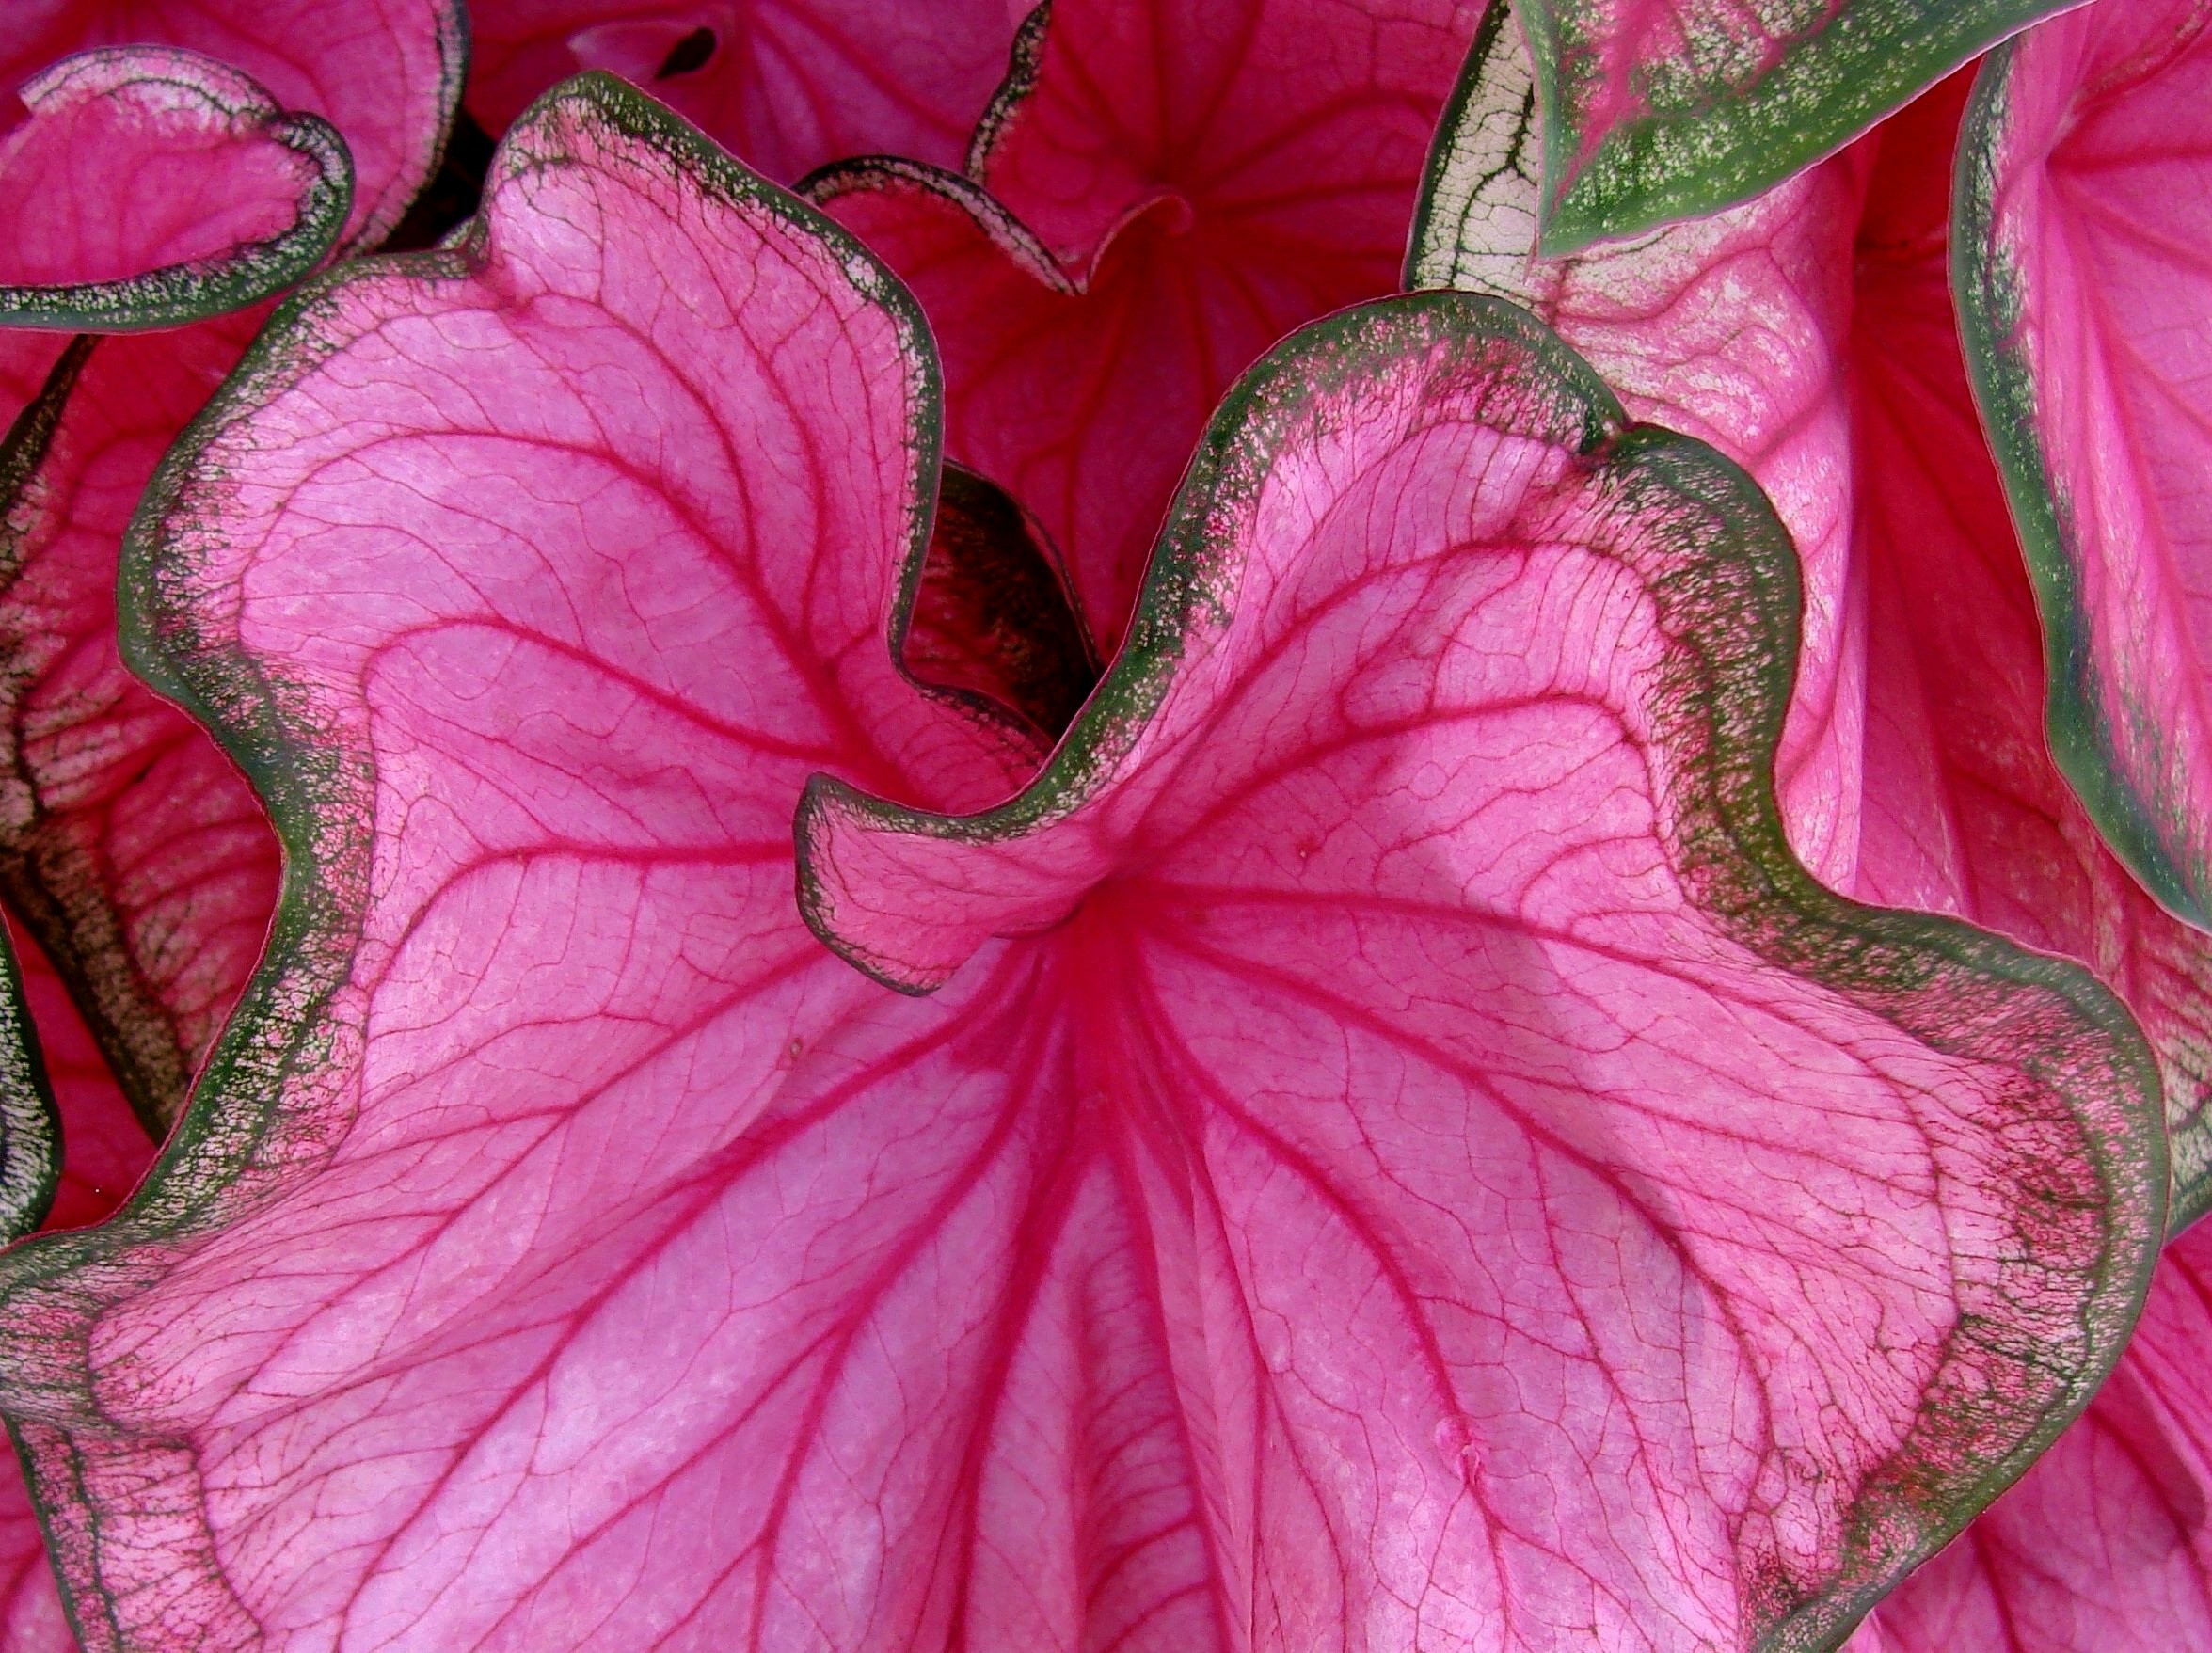 Pink Caladium Leaves